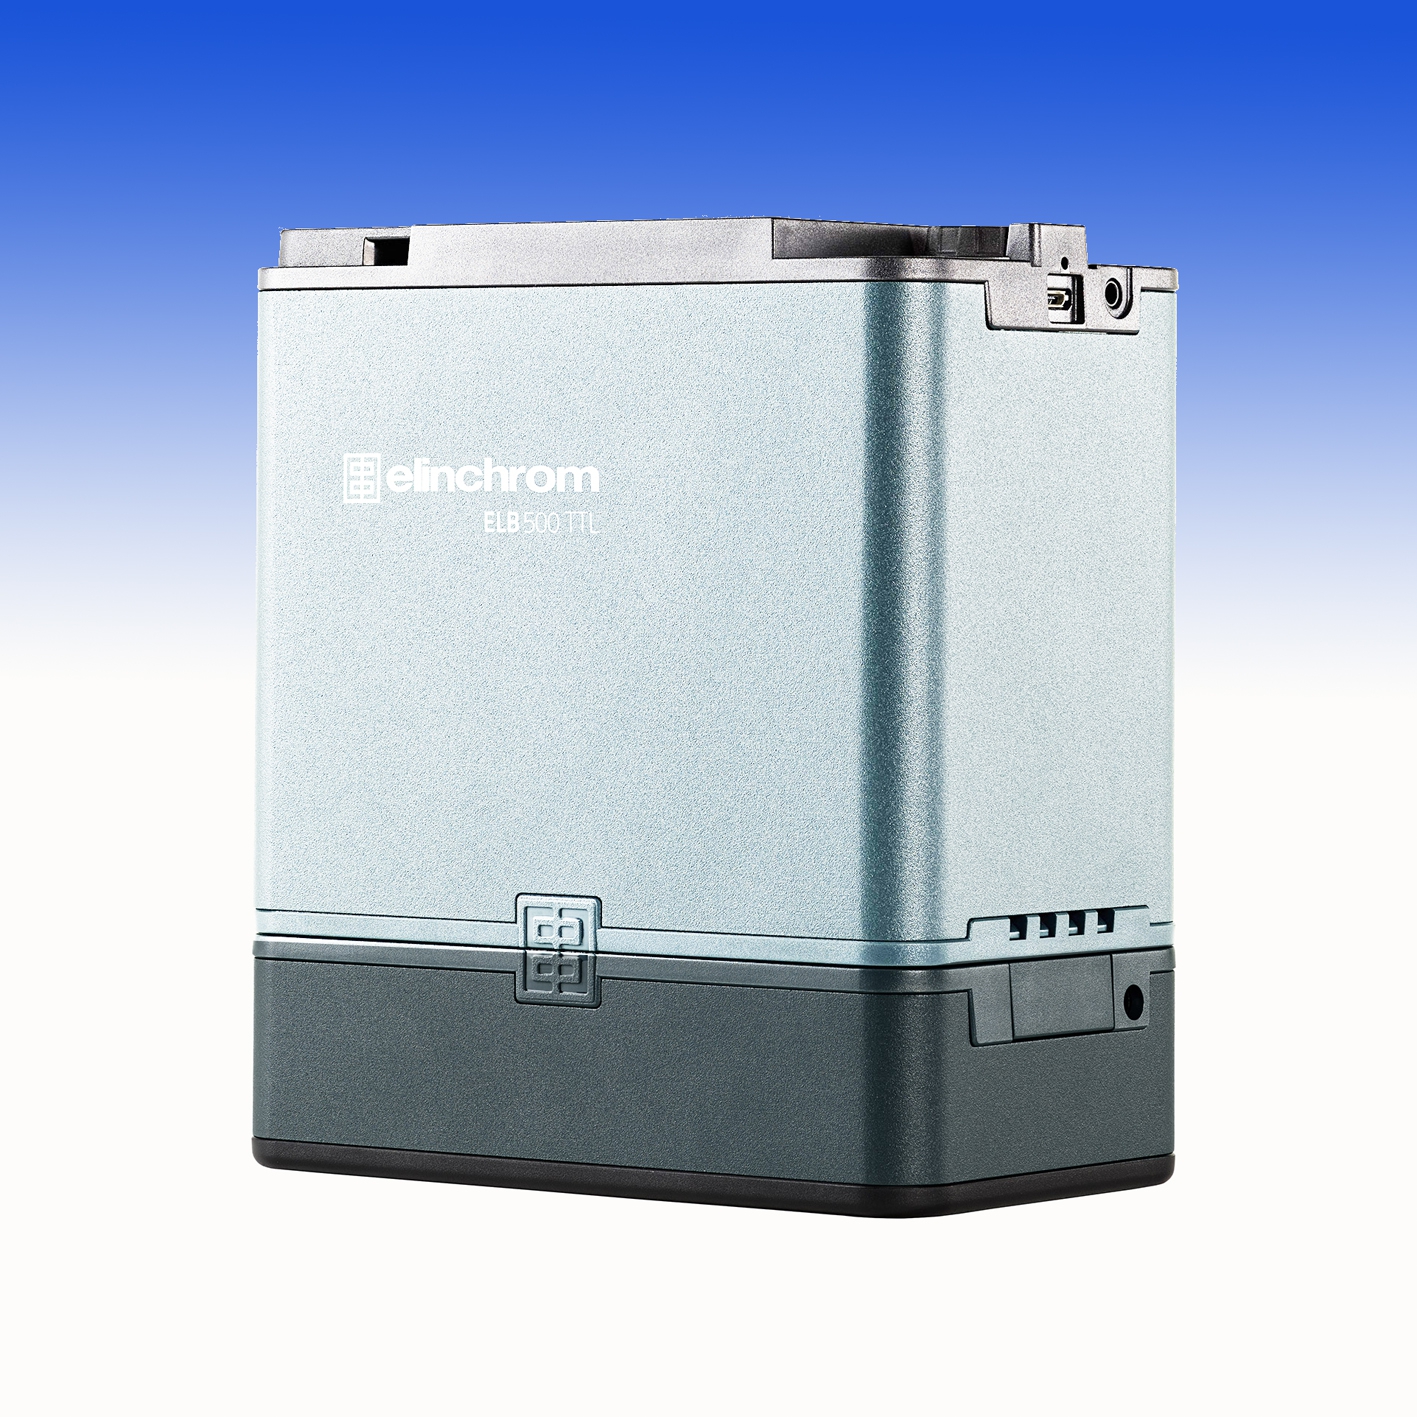 ELB 500 Batterie (E19297)